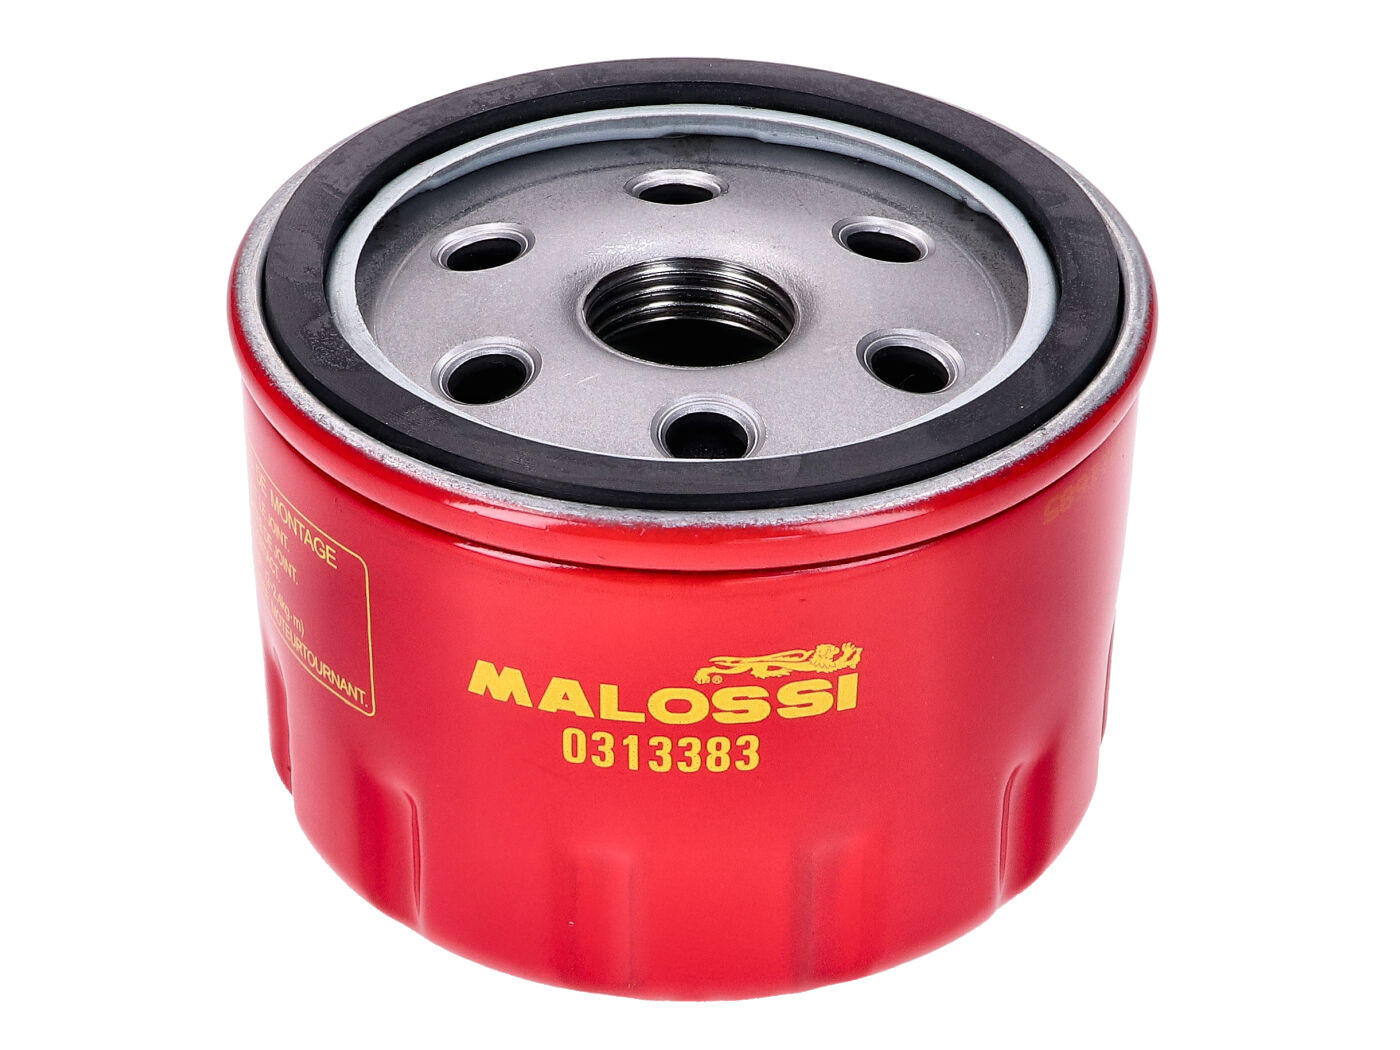 Malossi Red Chilli olajszűrő Aprilia, Gilera, Malaguti, Peugeot 400-500ccm motorokhoz